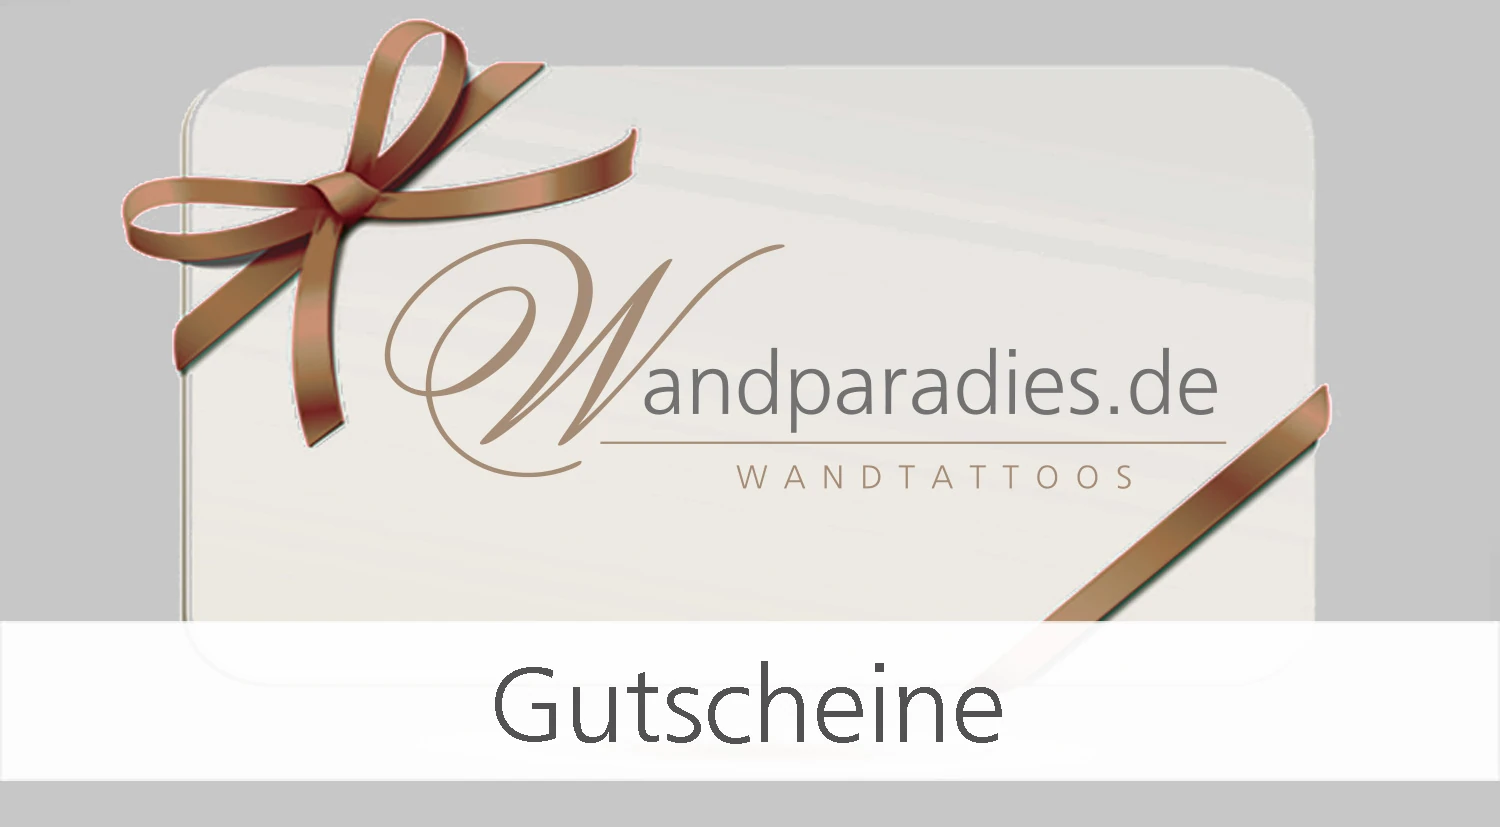 Gutscheine für Wandtattoos von Wandparadies.de